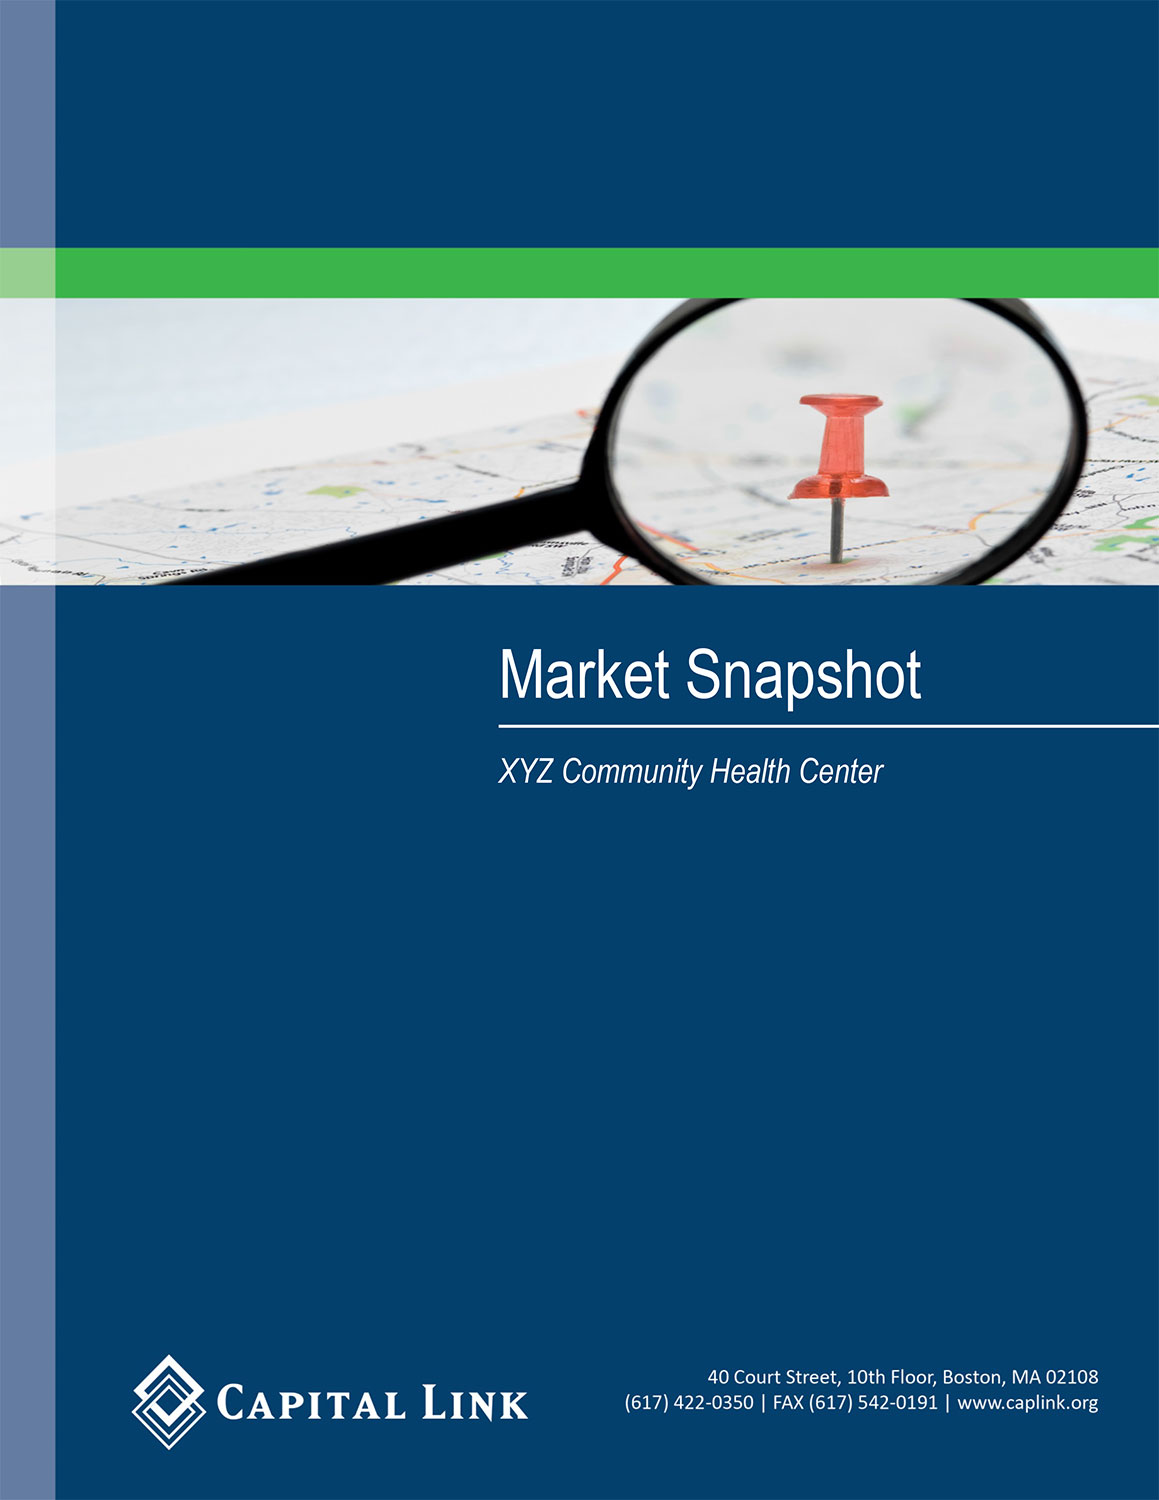 Market Snapshot Sample